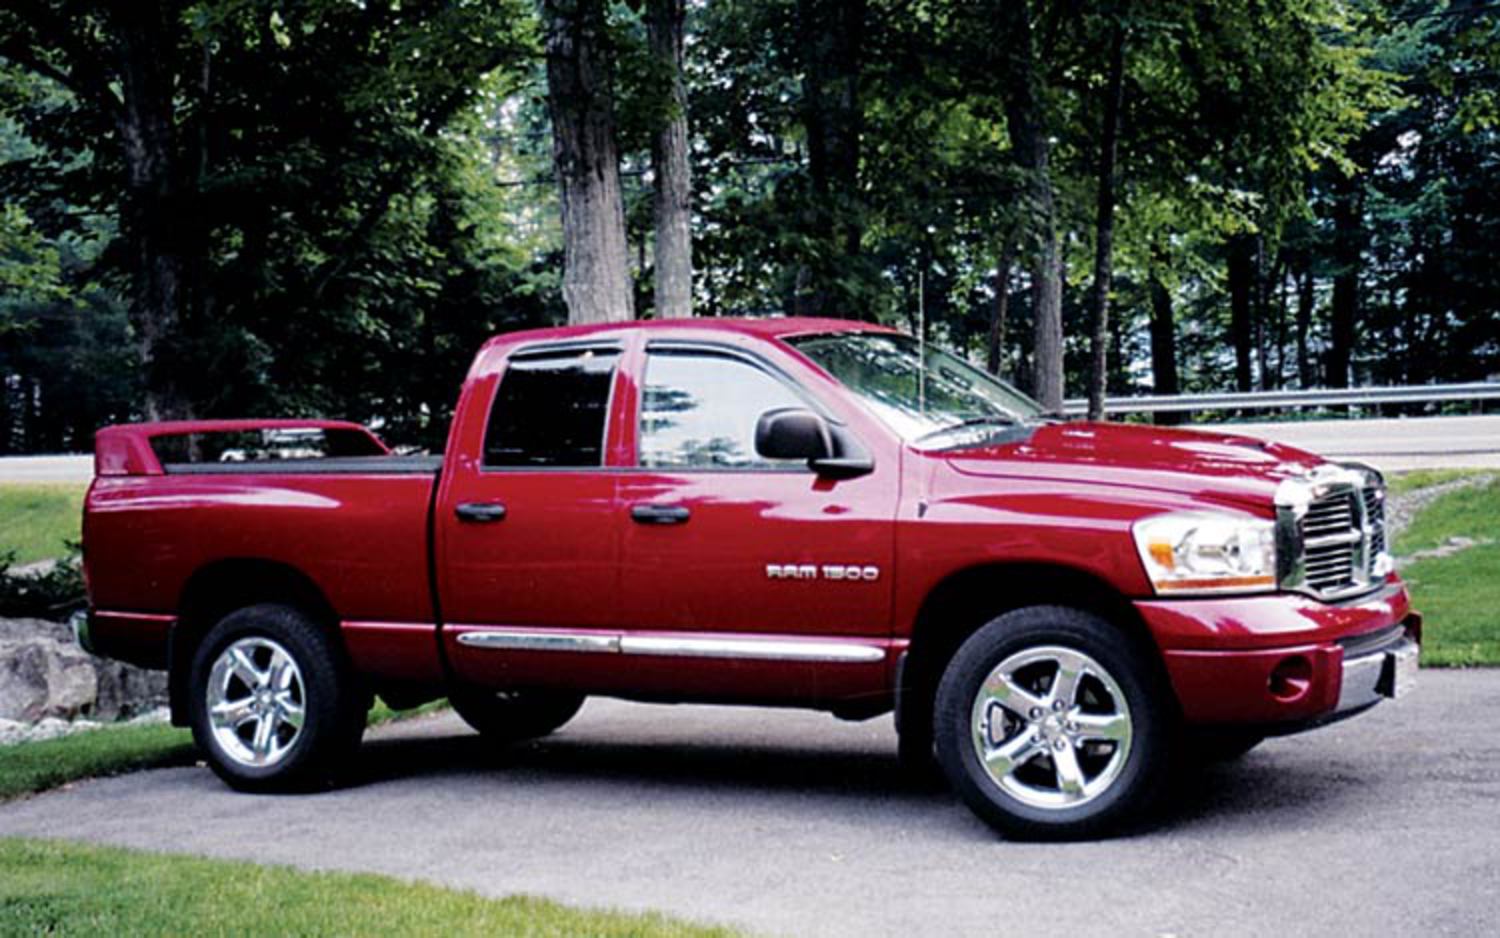 2006 Dodge Ram 1500 Laramie David Anson Of Marlborough Massachusetts